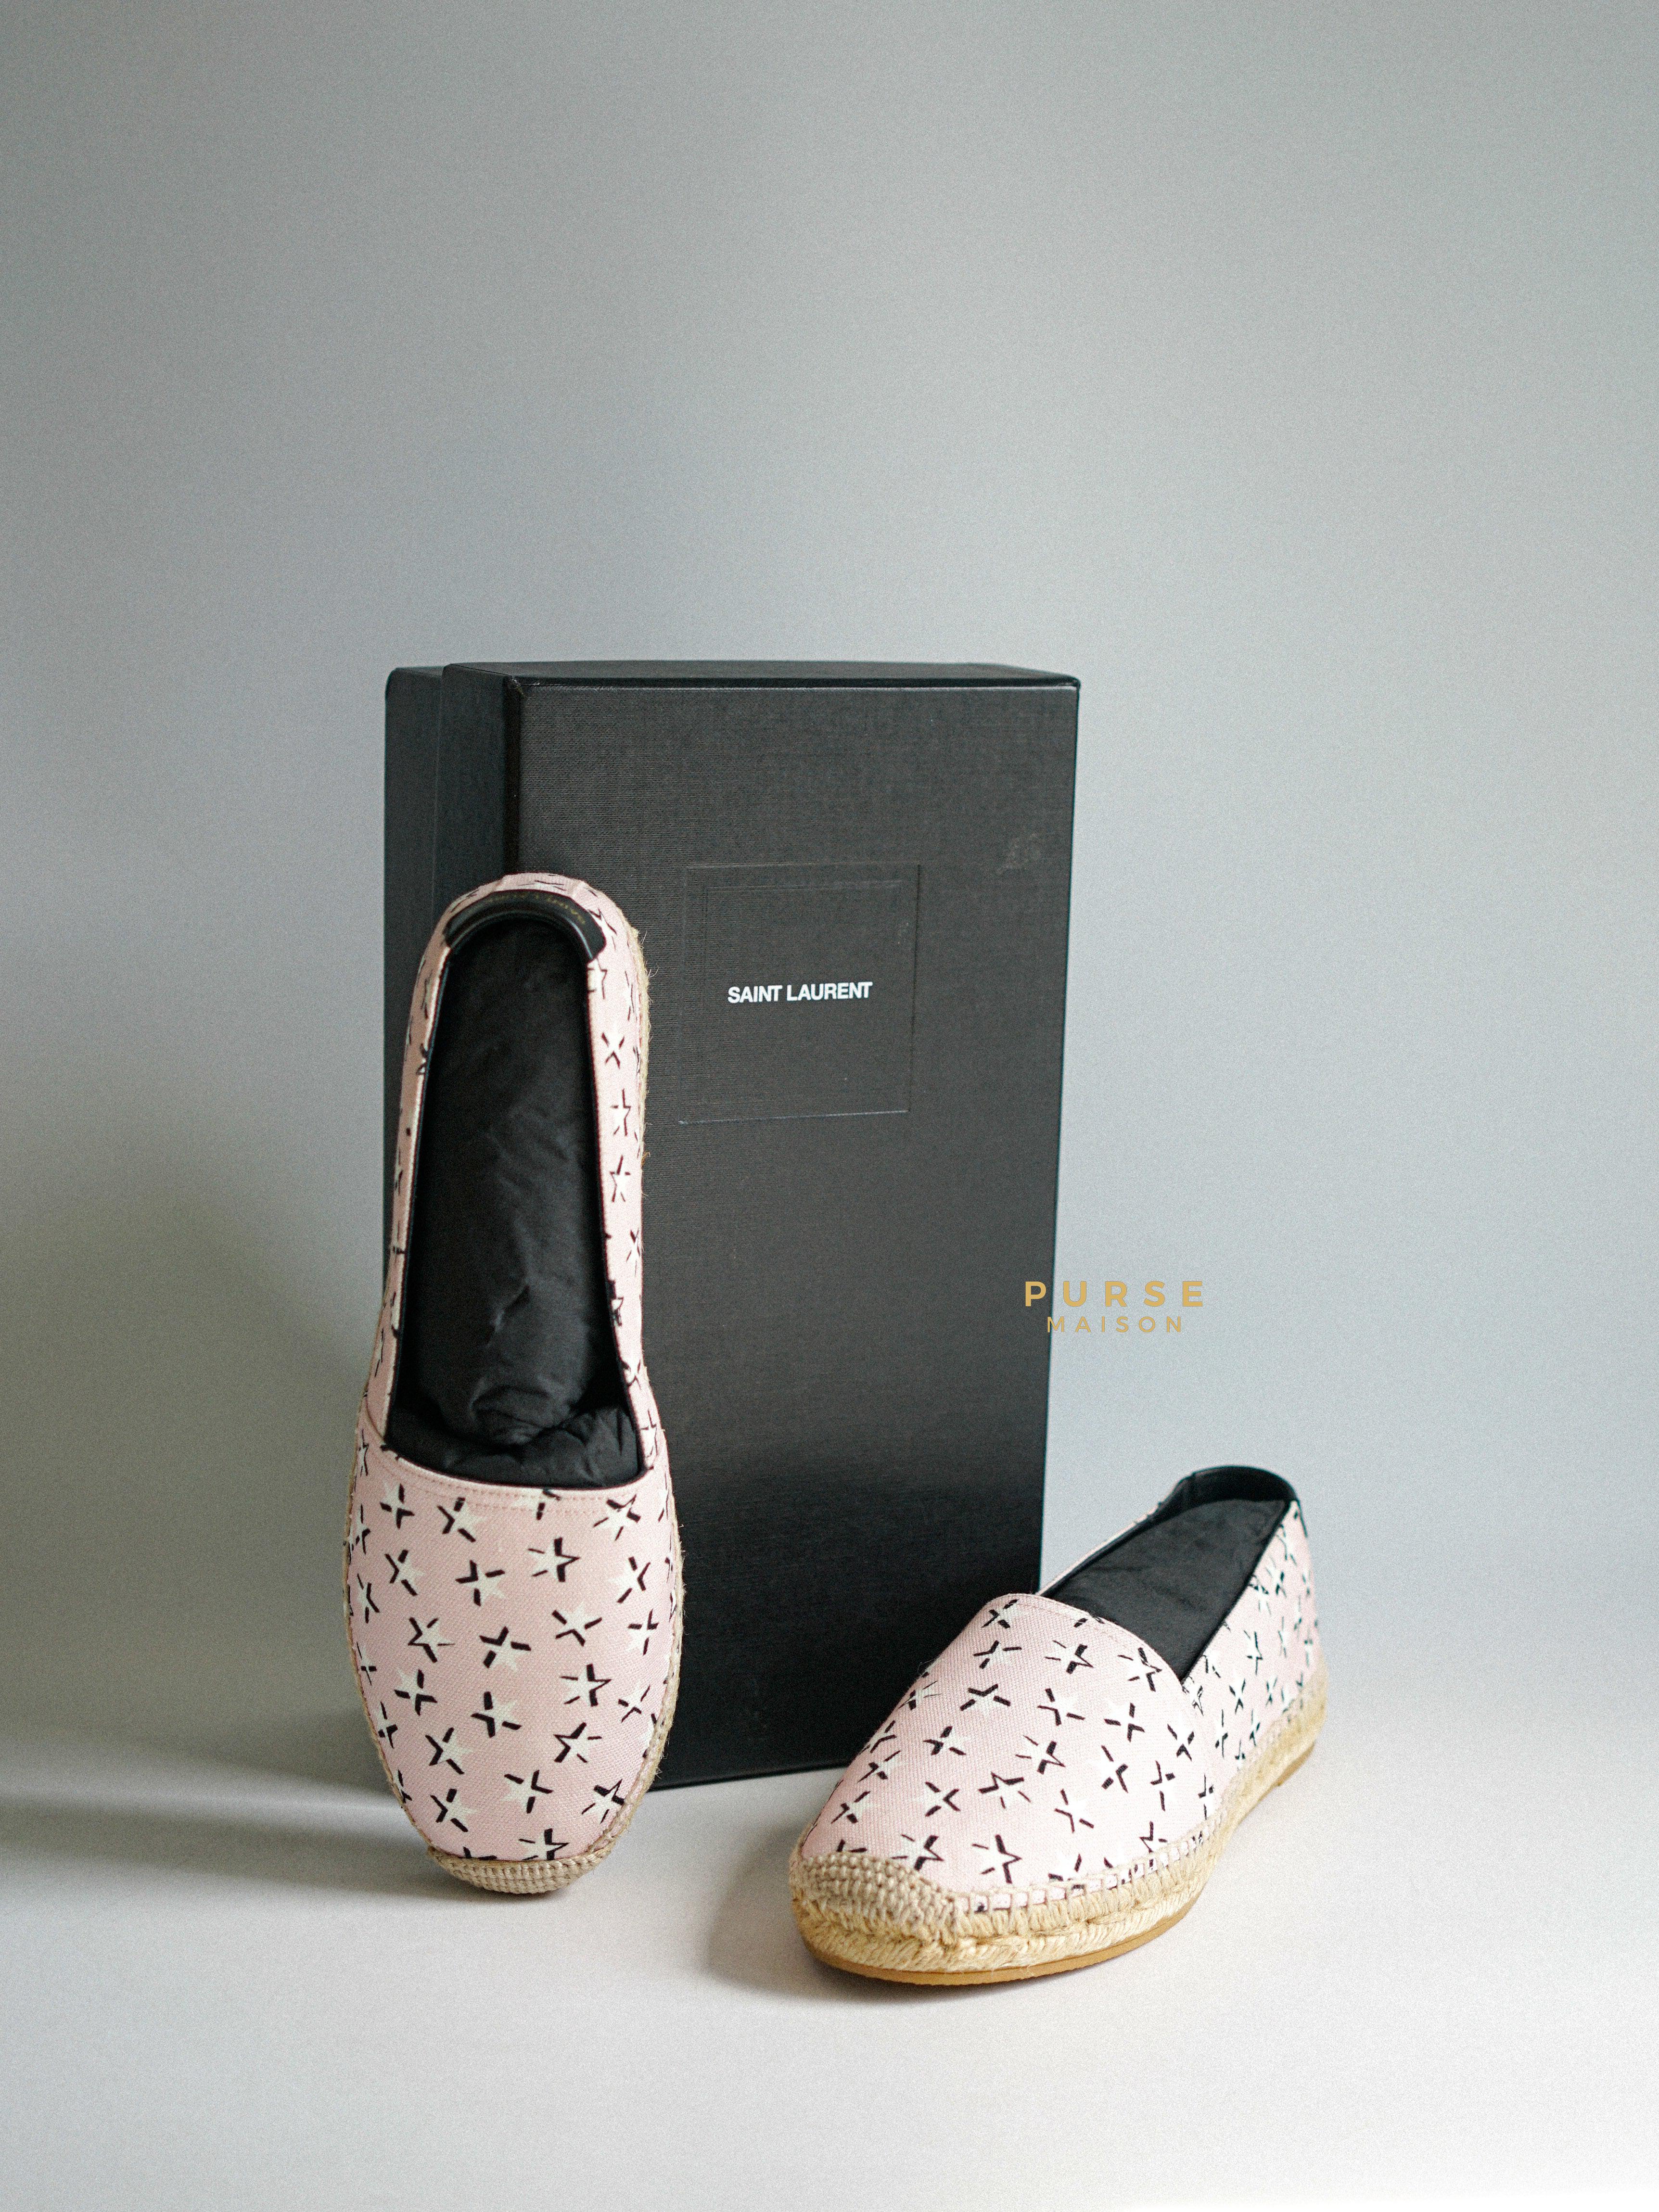 YSL Espadrilles Pink Star Fun Canvas Shoes Size 38.5 EUR (25cm) | Purse Maison Luxury Bags Shop